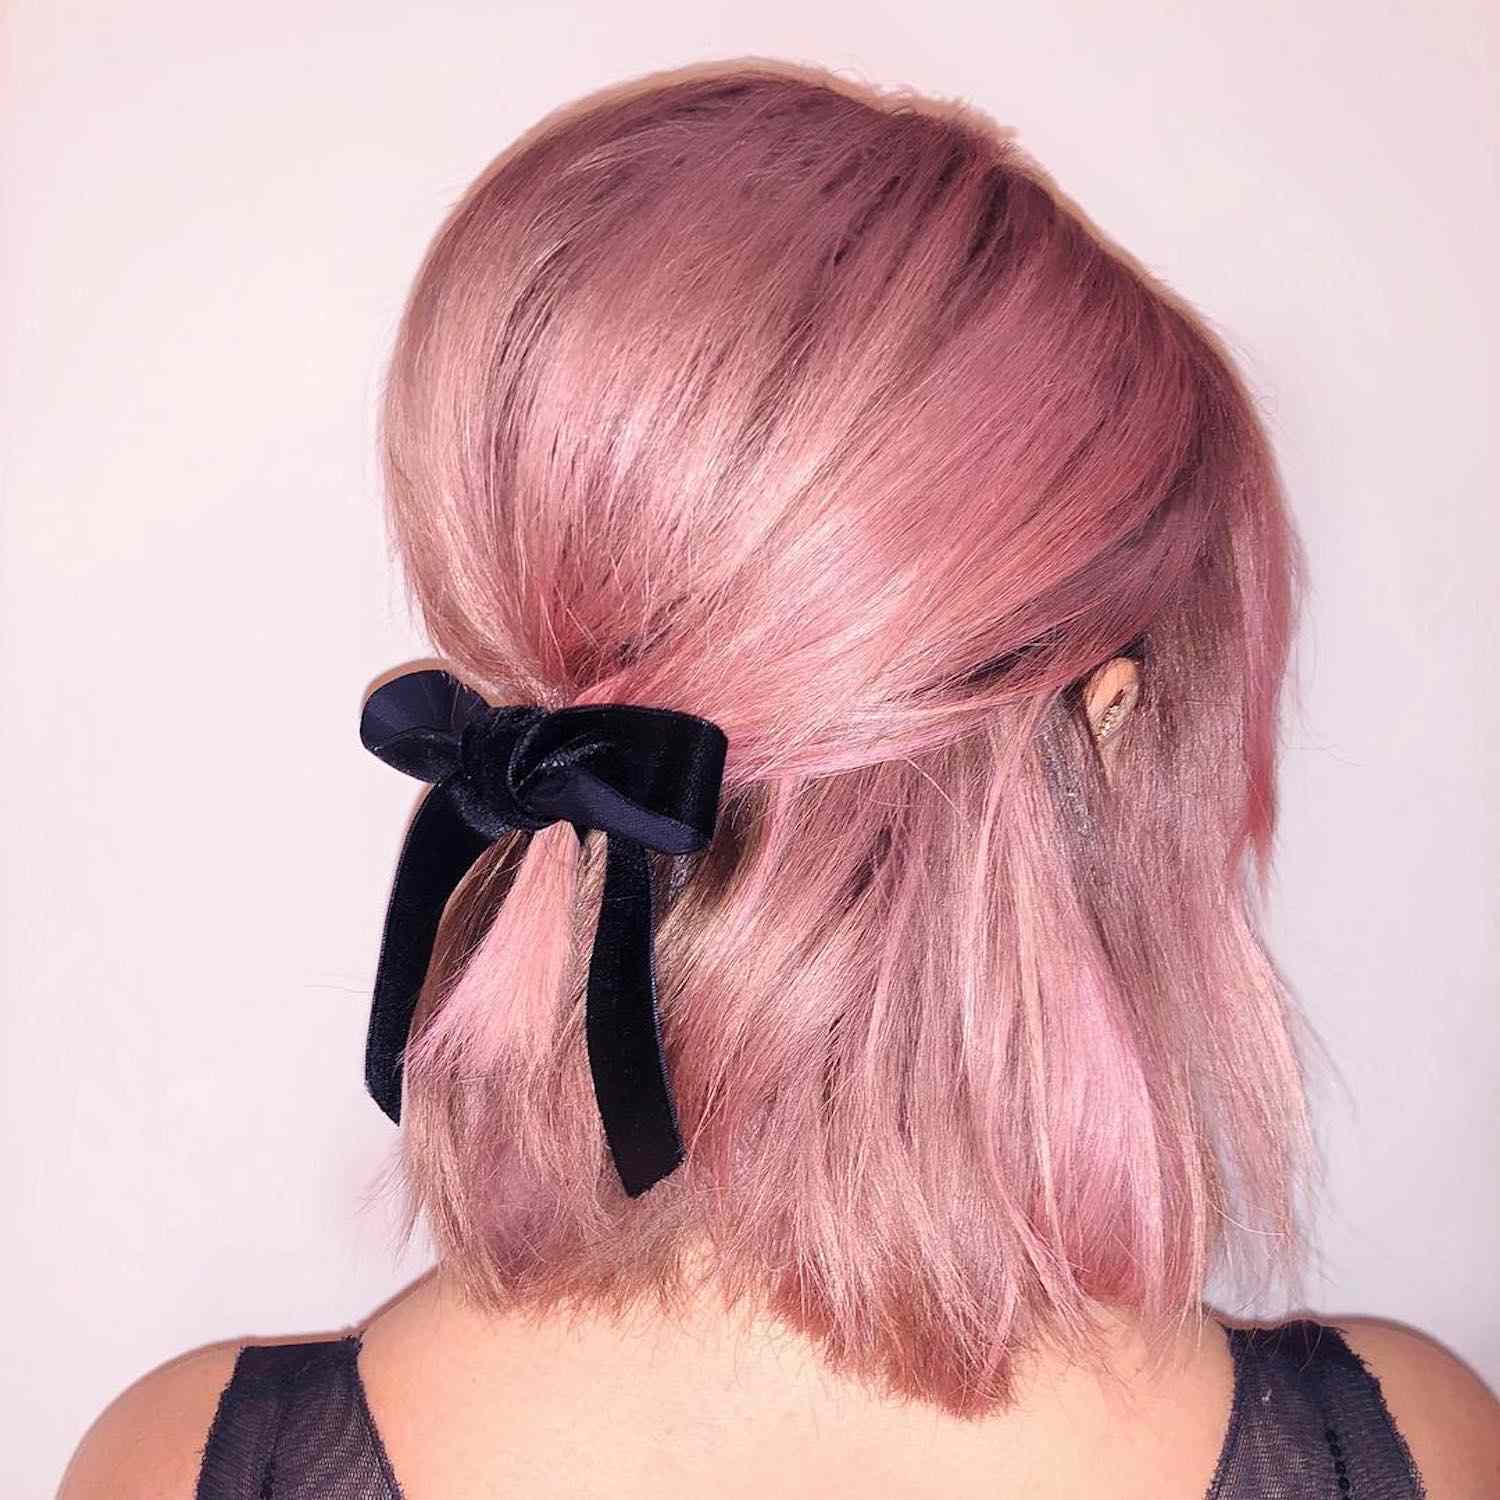 A vista por trás de Ashley Tisdeil com um penteado rosa na forma de um pacote de mei o-aberto com uma fita